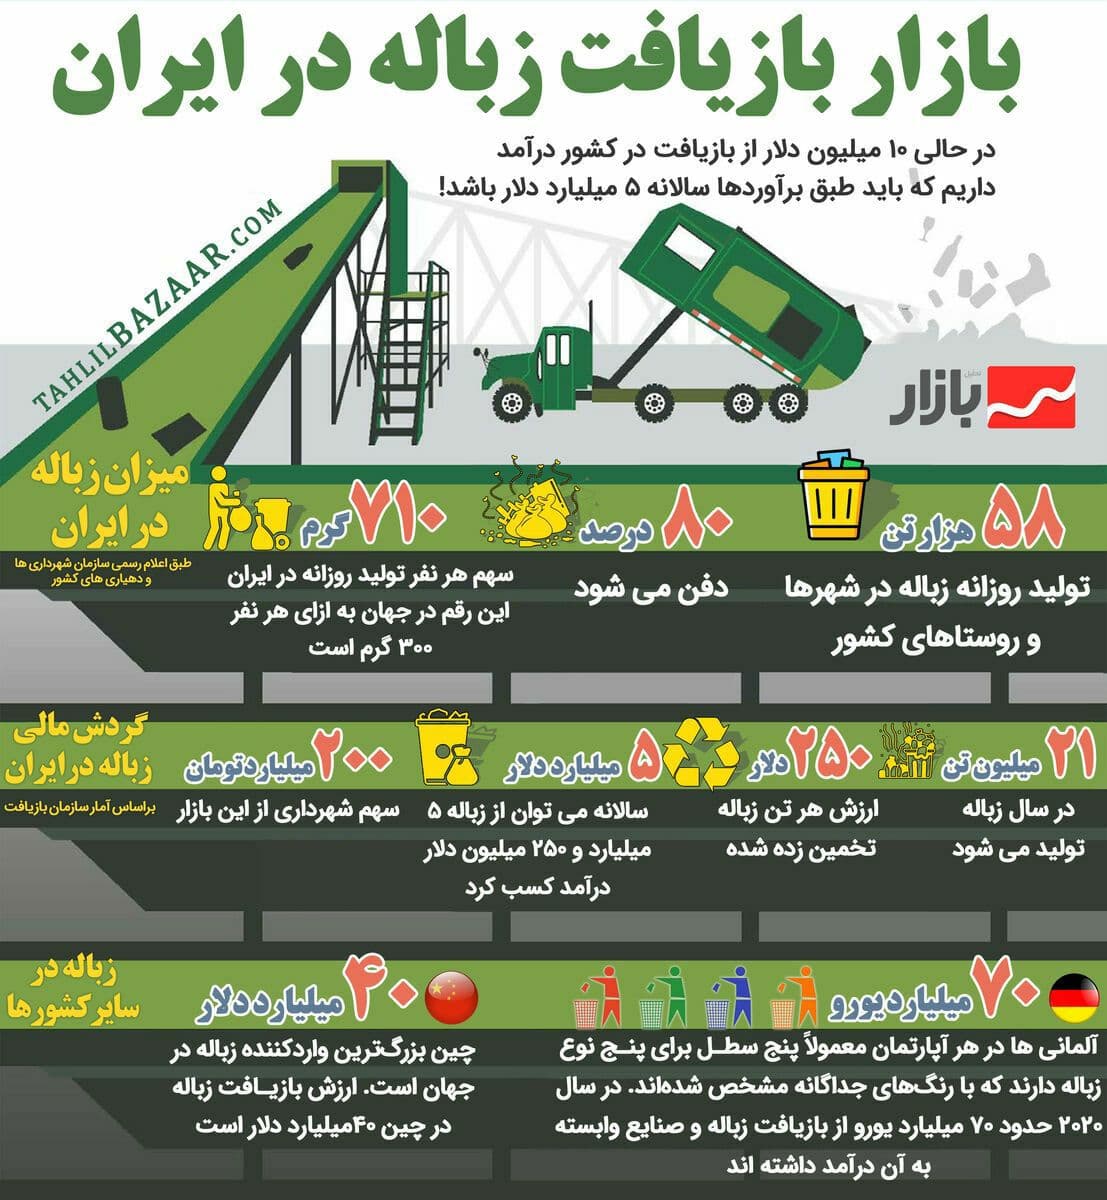 بازیافت زباله در ایران .....